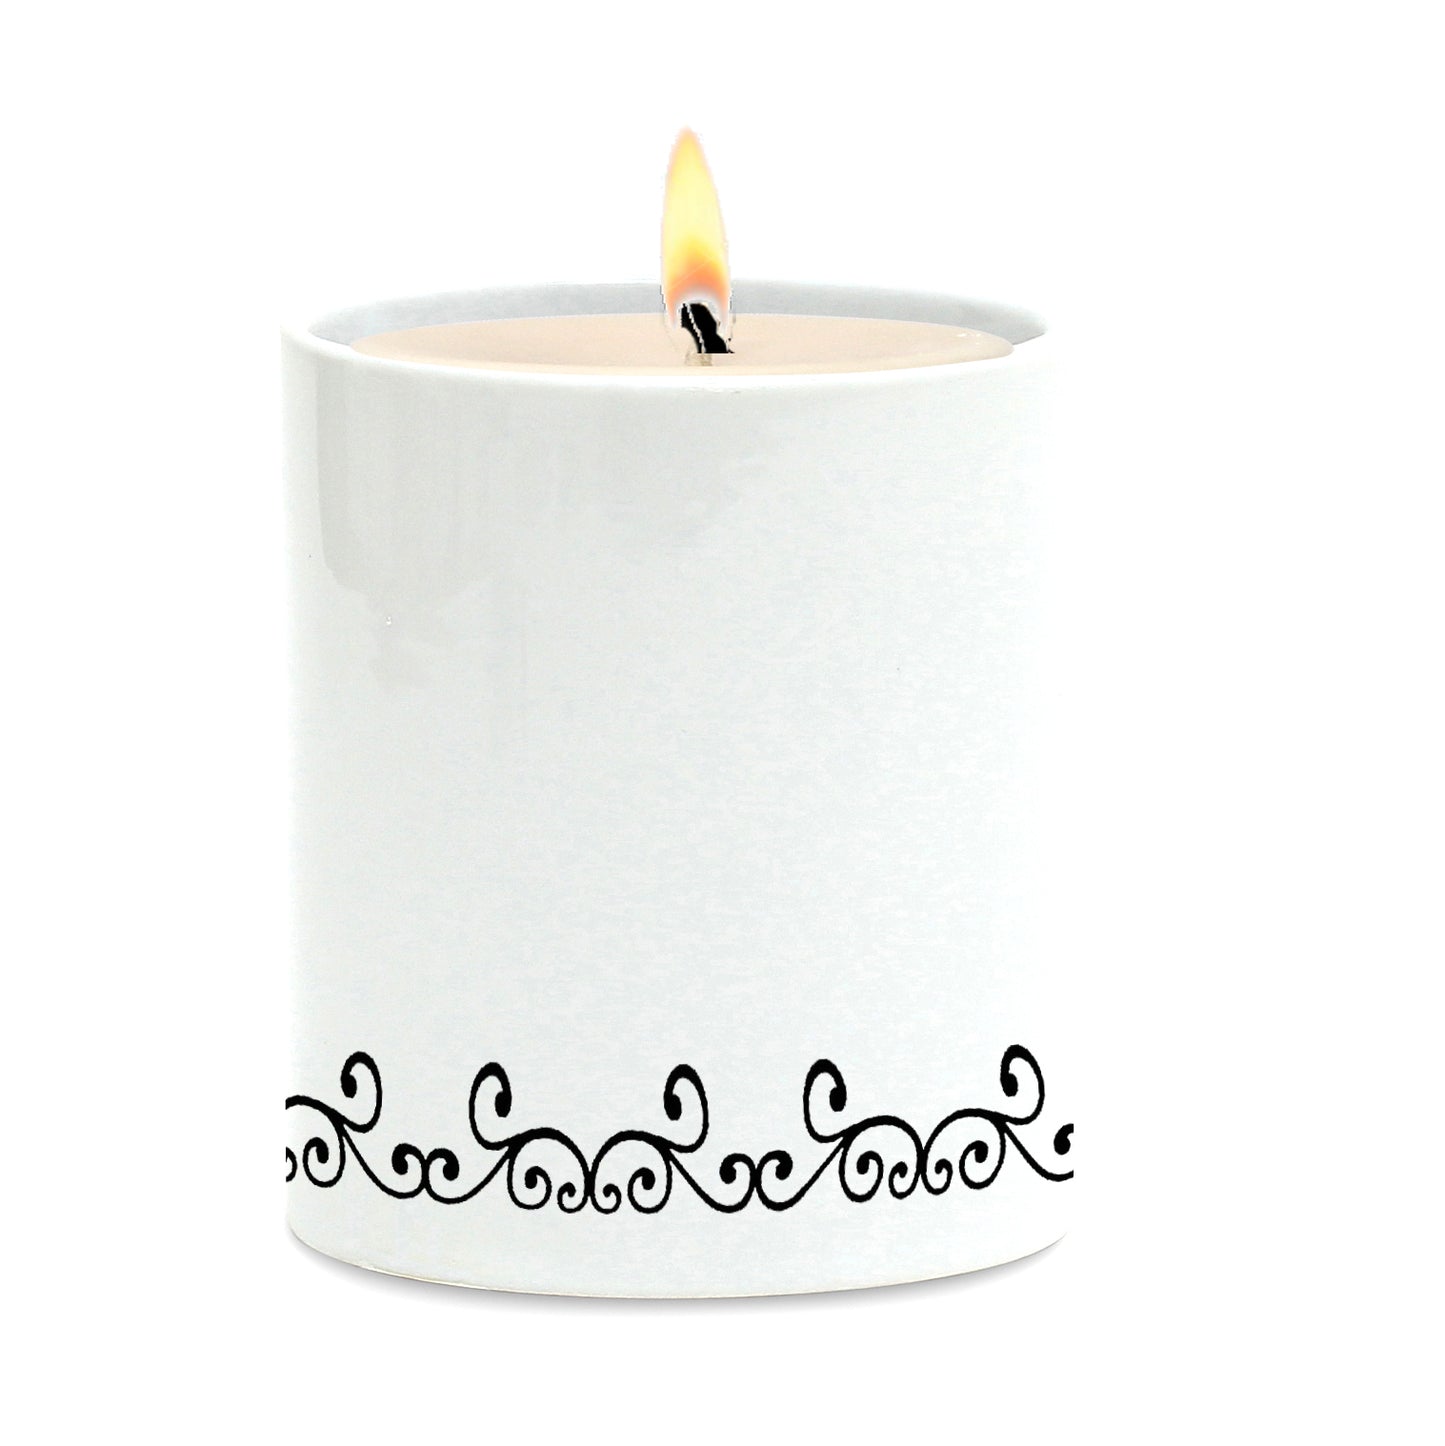 SUBLIMART: Line Art - Porcelain Soy Wax Candle (Design #LIN25)